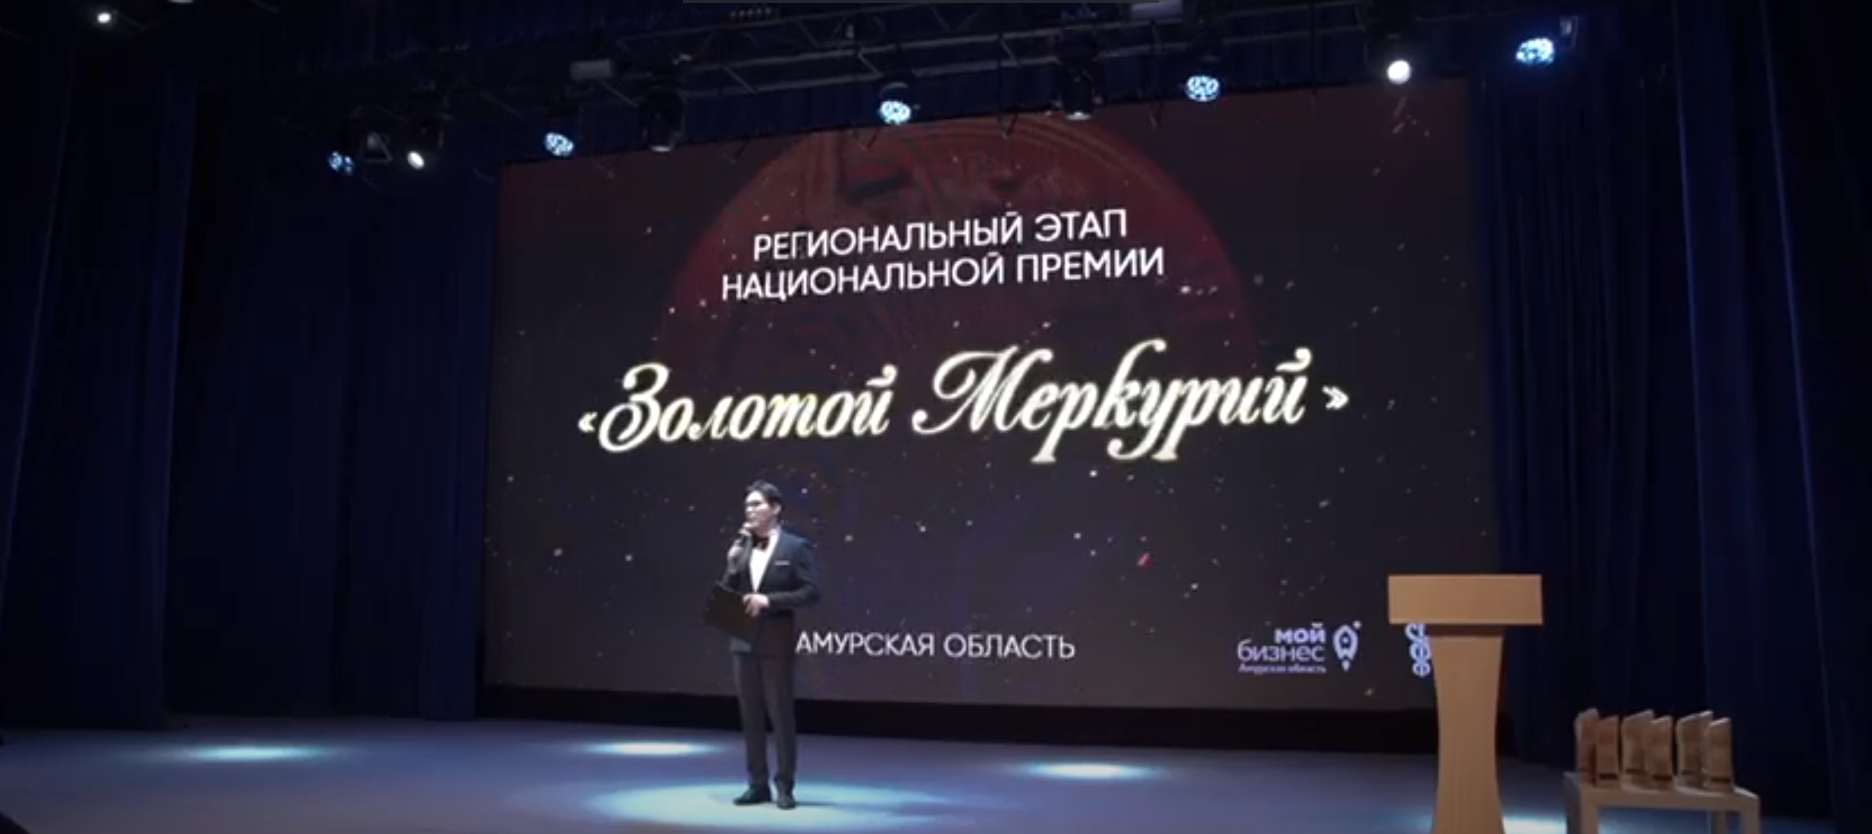 Церемония награждения победителей регионального этапа Конкурса "Золотой Меркурий" в Амурской области